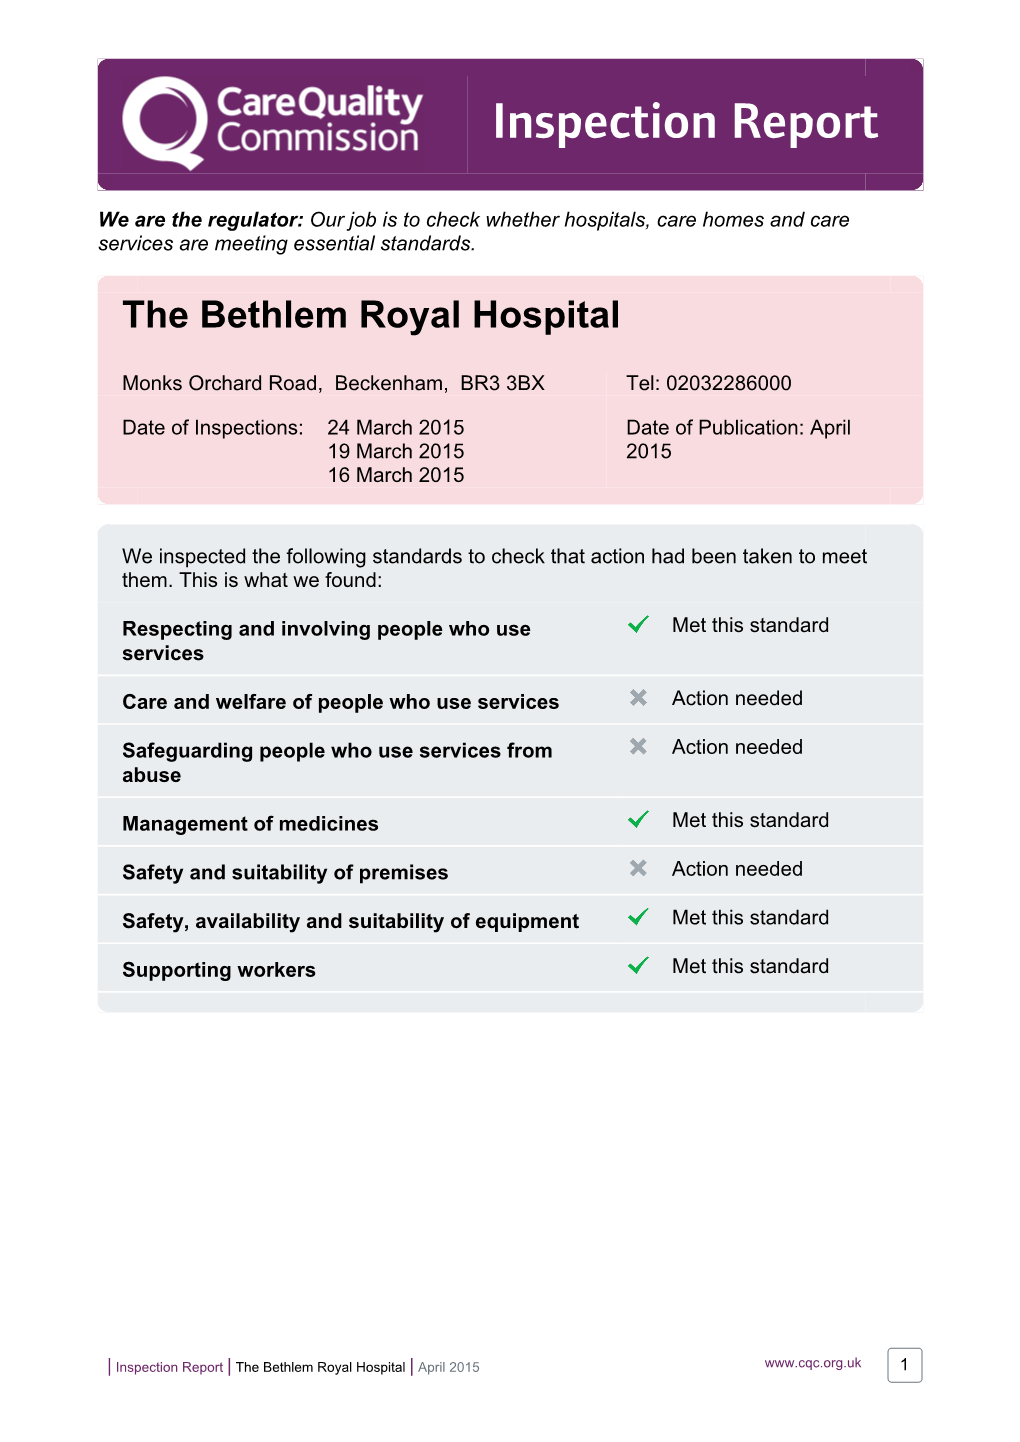 The Bethlem Royal Hospital